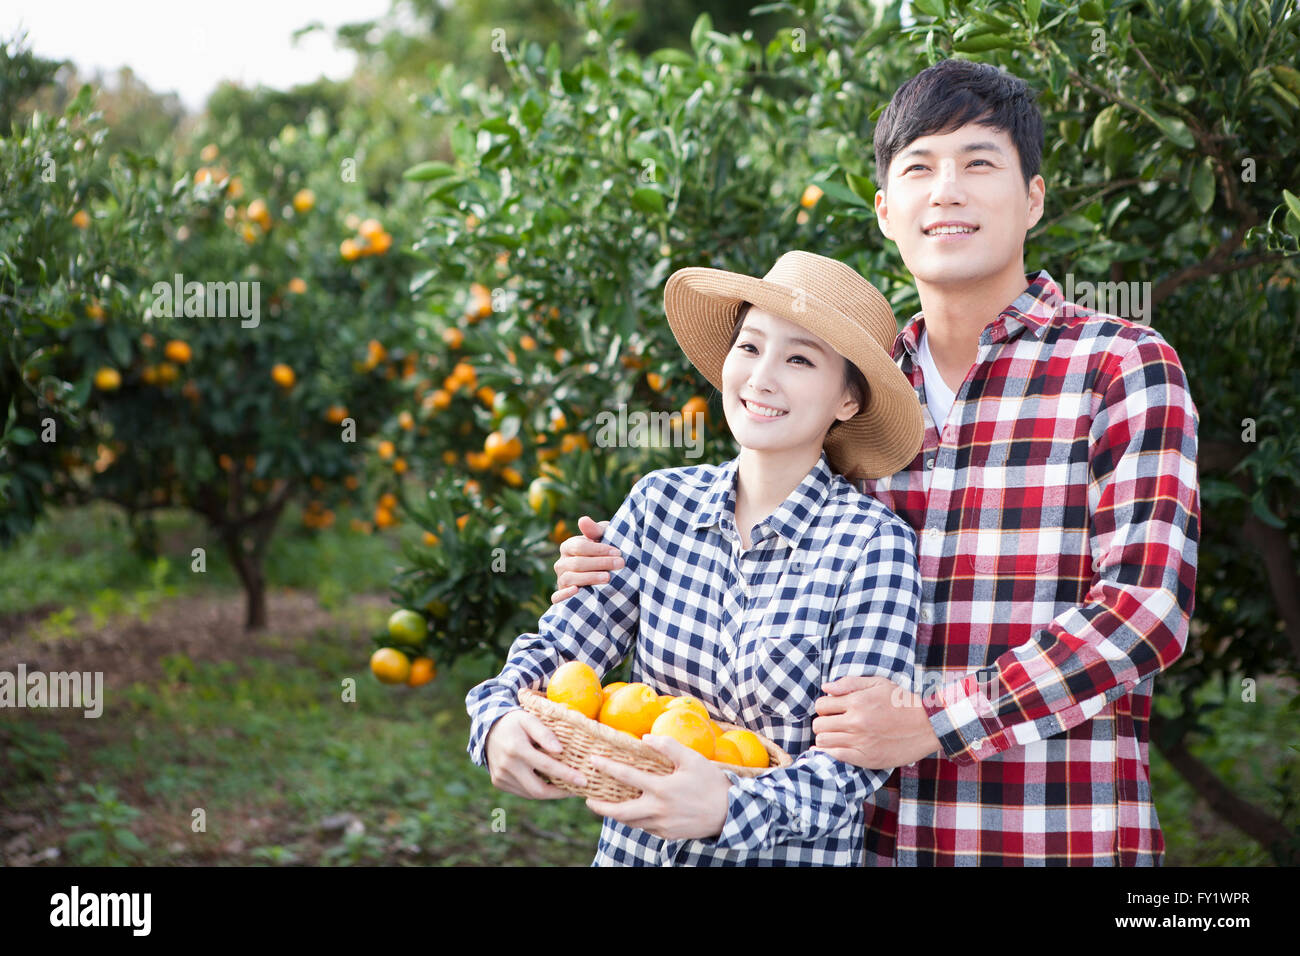 Hombre abrace a una mujer en un sombrero con una canasta de tangerinas de ella detrás en el campo mandarina tanto mirando hacia arriba Foto de stock